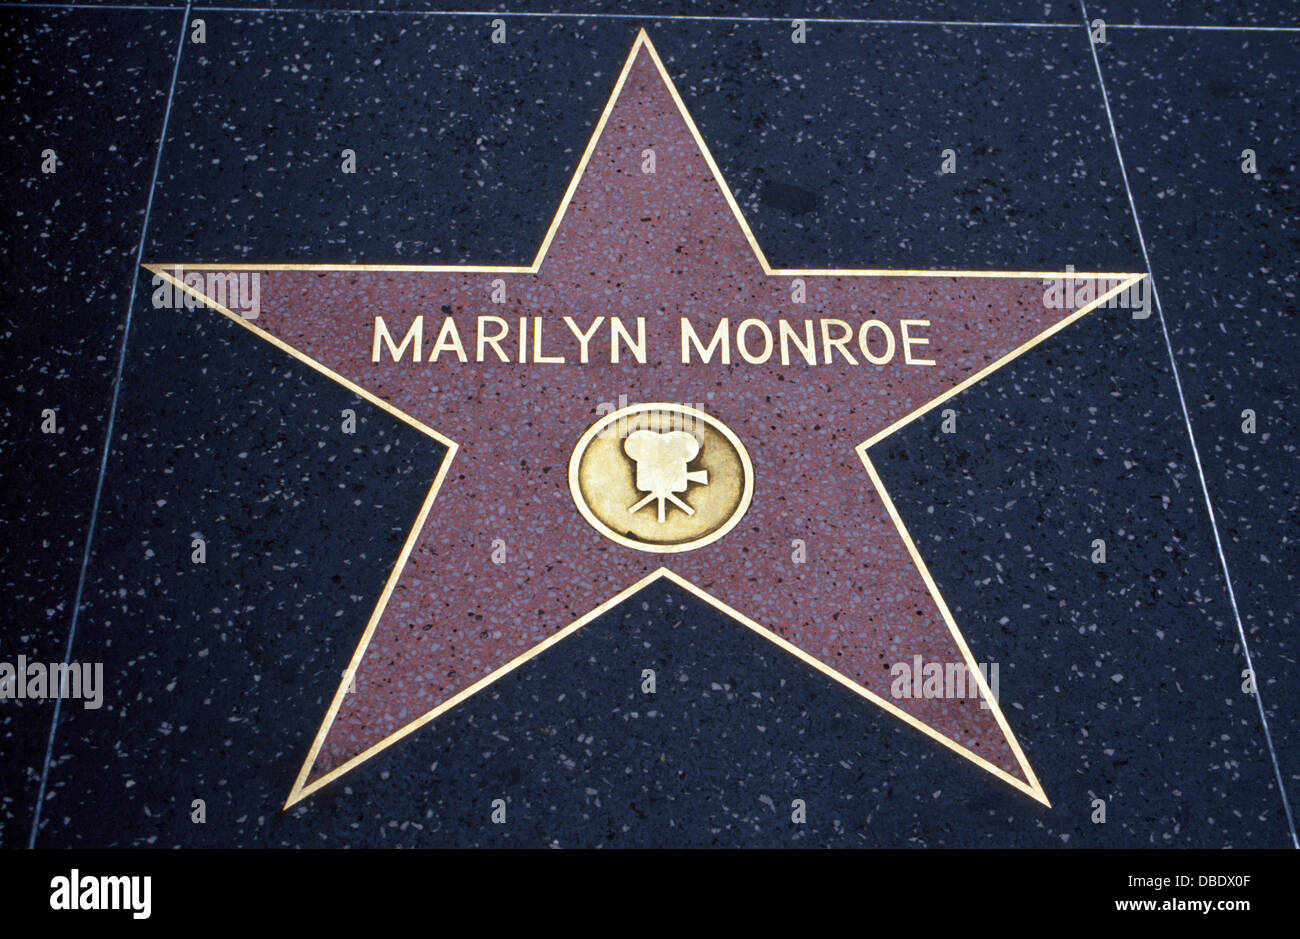 Estrella de Cine Marilyn Monroe es uno de más de 2.500 celebridades que han sido honrado con una estrella en el Paseo de la Fama de Hollywood, en California, Estados Unidos. Foto de stock